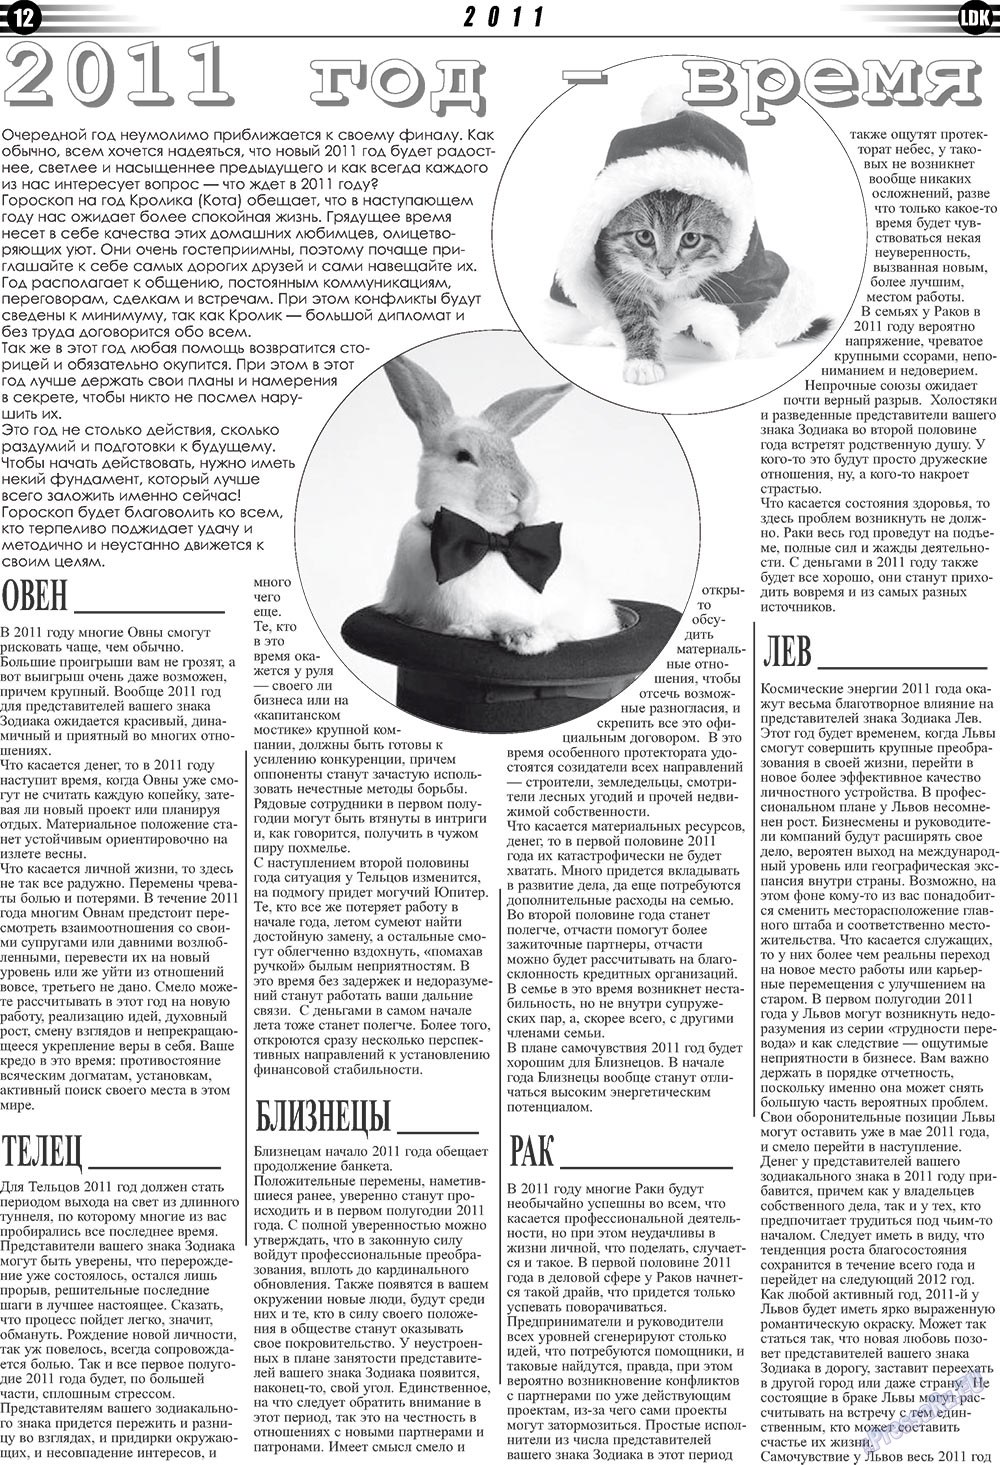 LDK по-русски (газета). 2010 год, номер 12, стр. 12